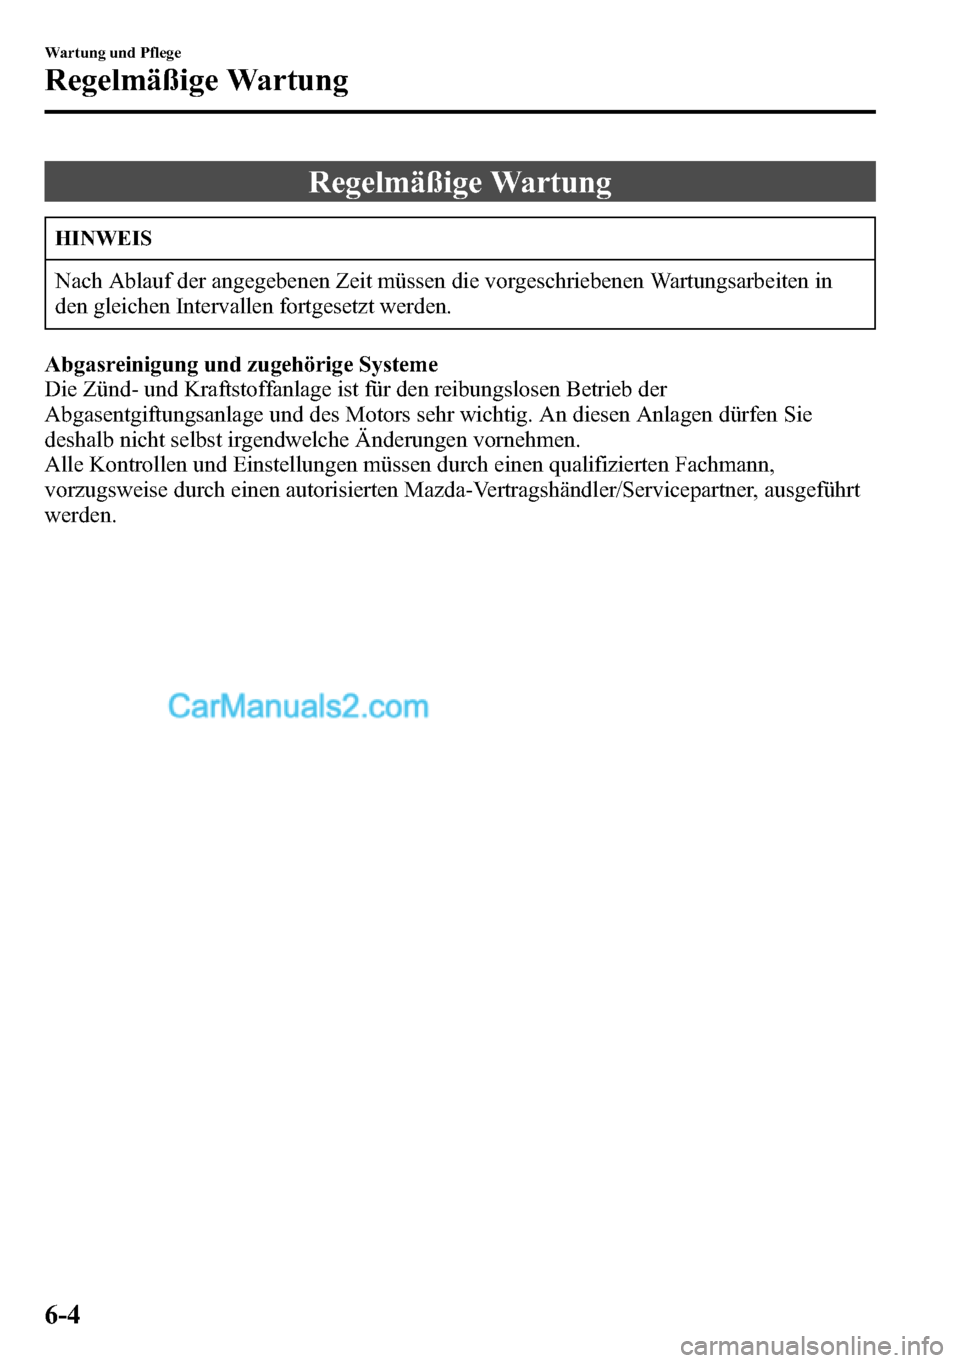 MAZDA MODEL CX-5 2016  Betriebsanleitung (in German) Regelmäßige Wartung
HINWEIS
Nach Ablauf der angegebenen Zeit müssen die vorgeschriebenen Wartungsarbeiten in
den gleichen Intervallen fortgesetzt werden.
Abgasreinigung und zugehörige Systeme
Die 